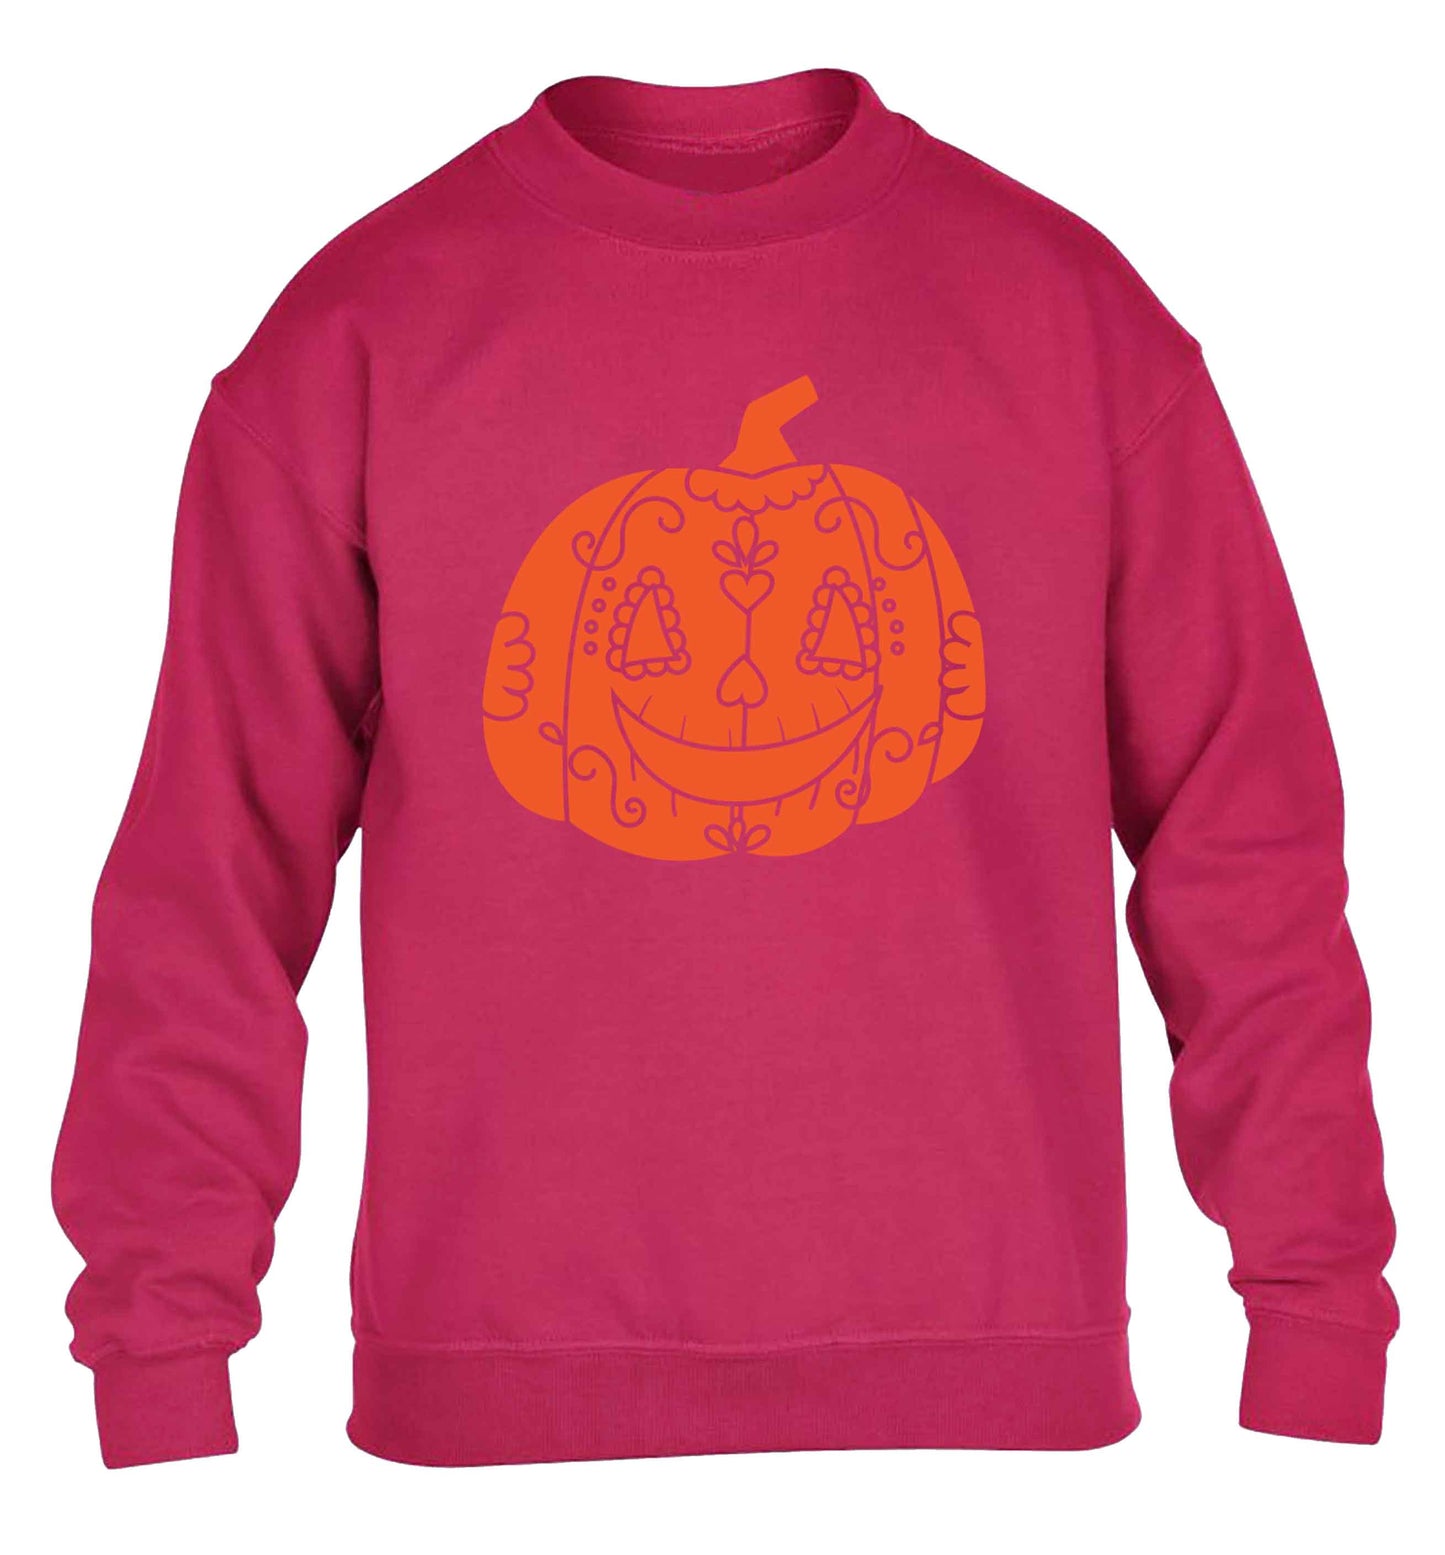 Pumpkin sugar skull children's pink sweater 12-13 Years